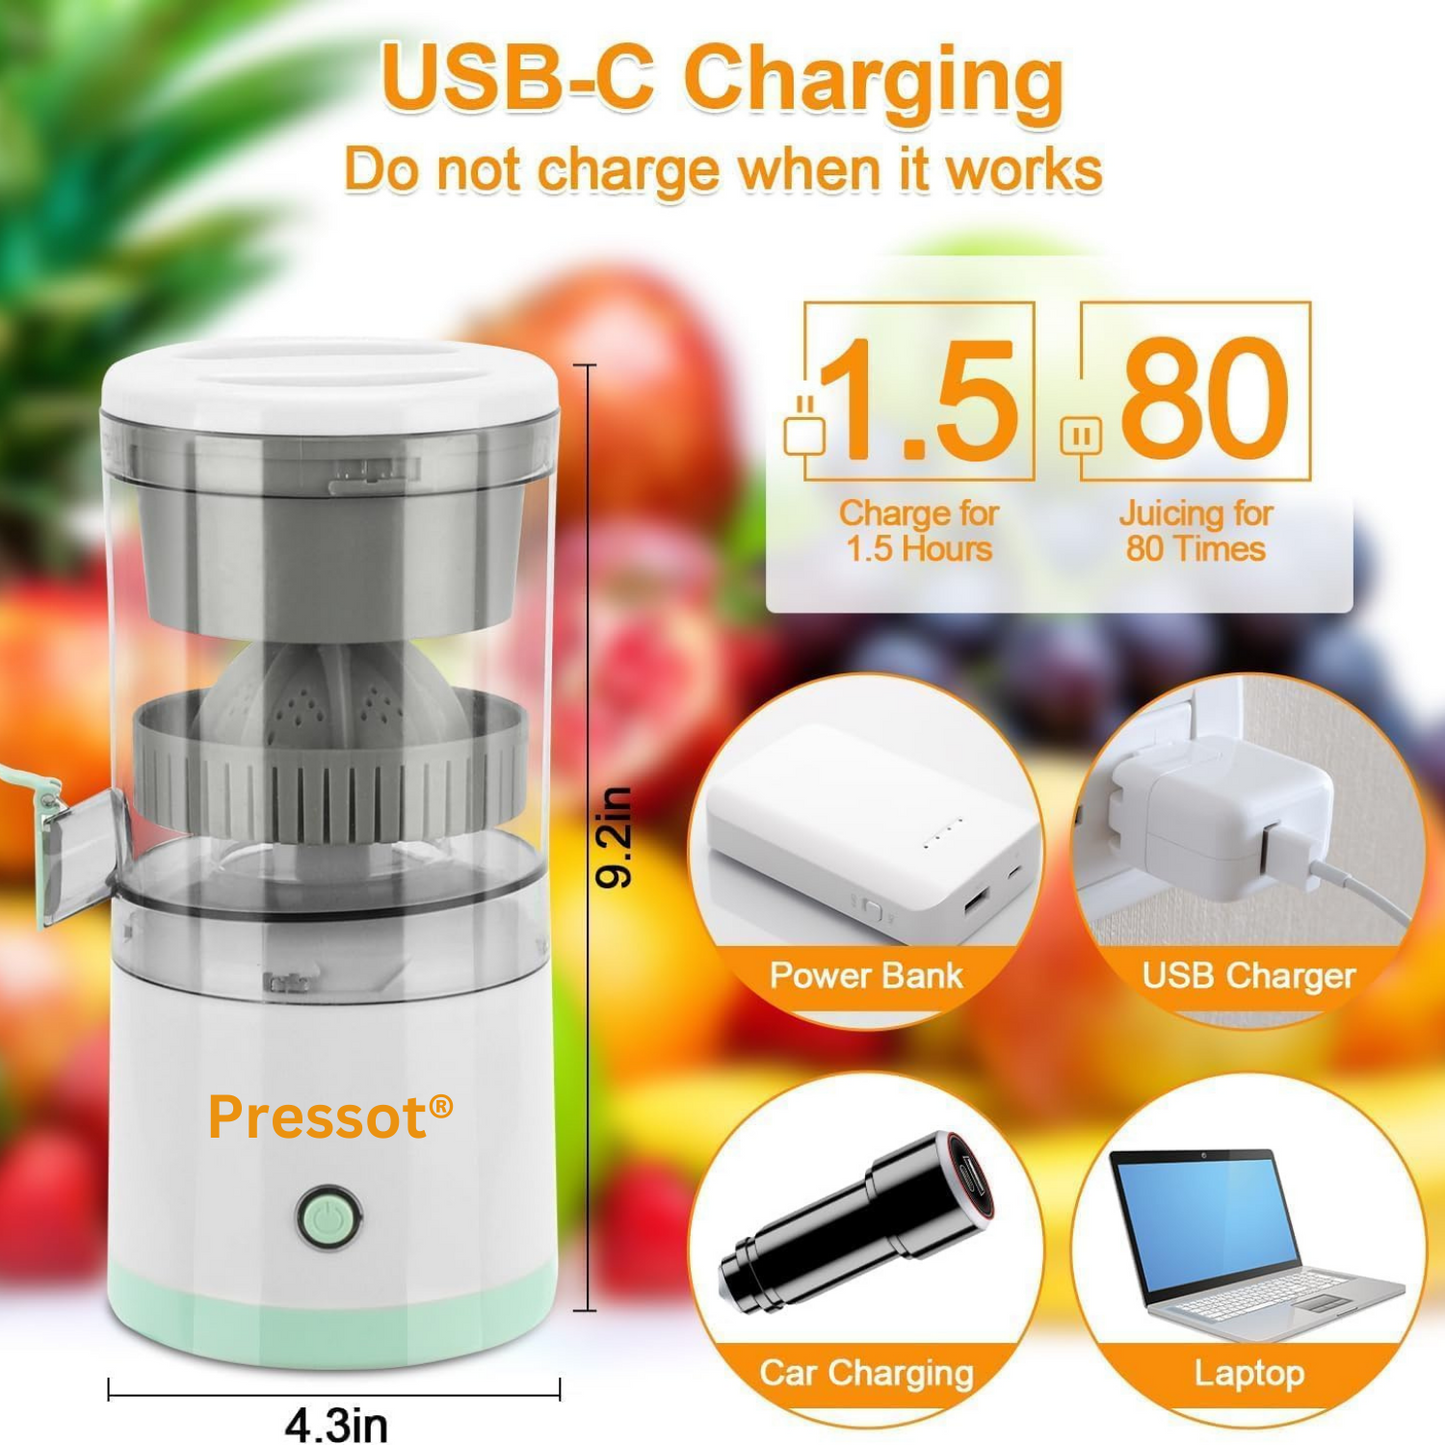 Pressot USB Rechargeable Fruit Juicer